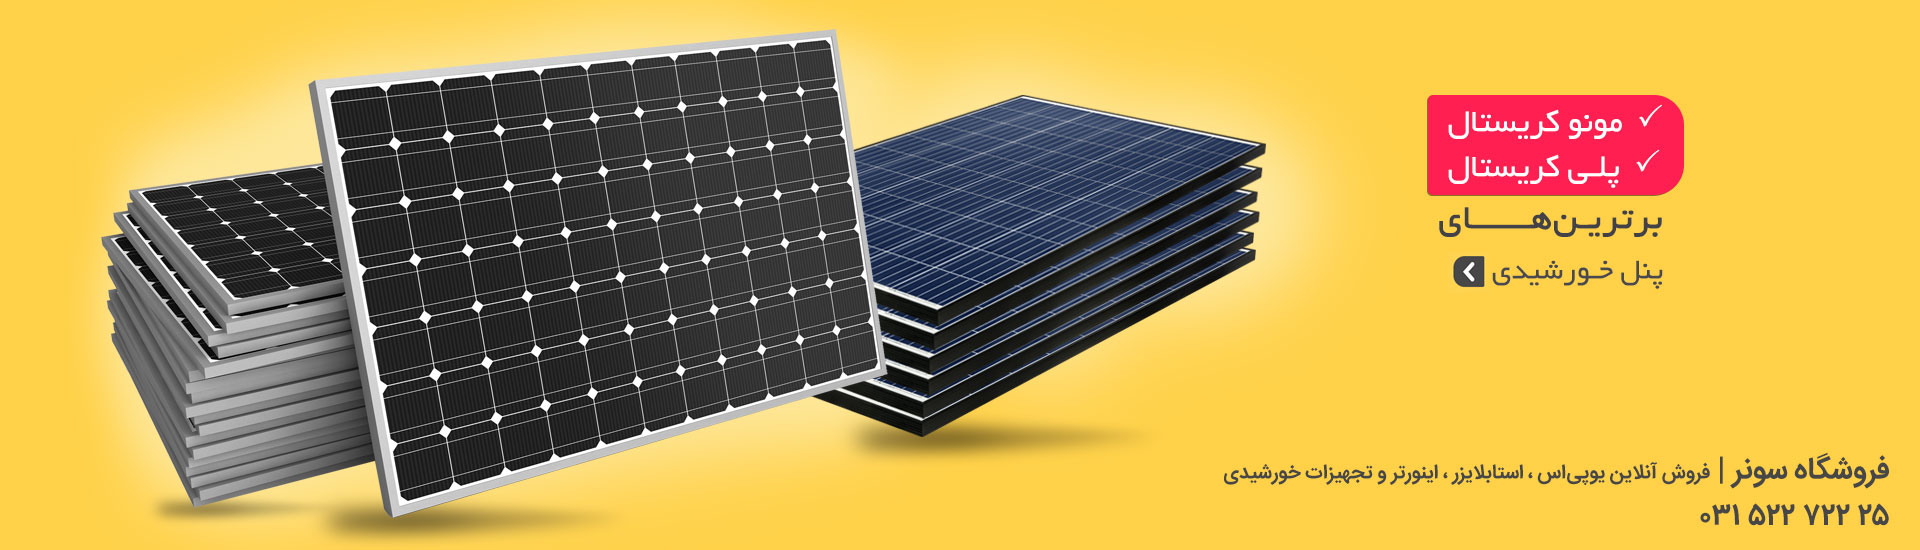 فروش آنلاین بهترین پنل خورشیدی